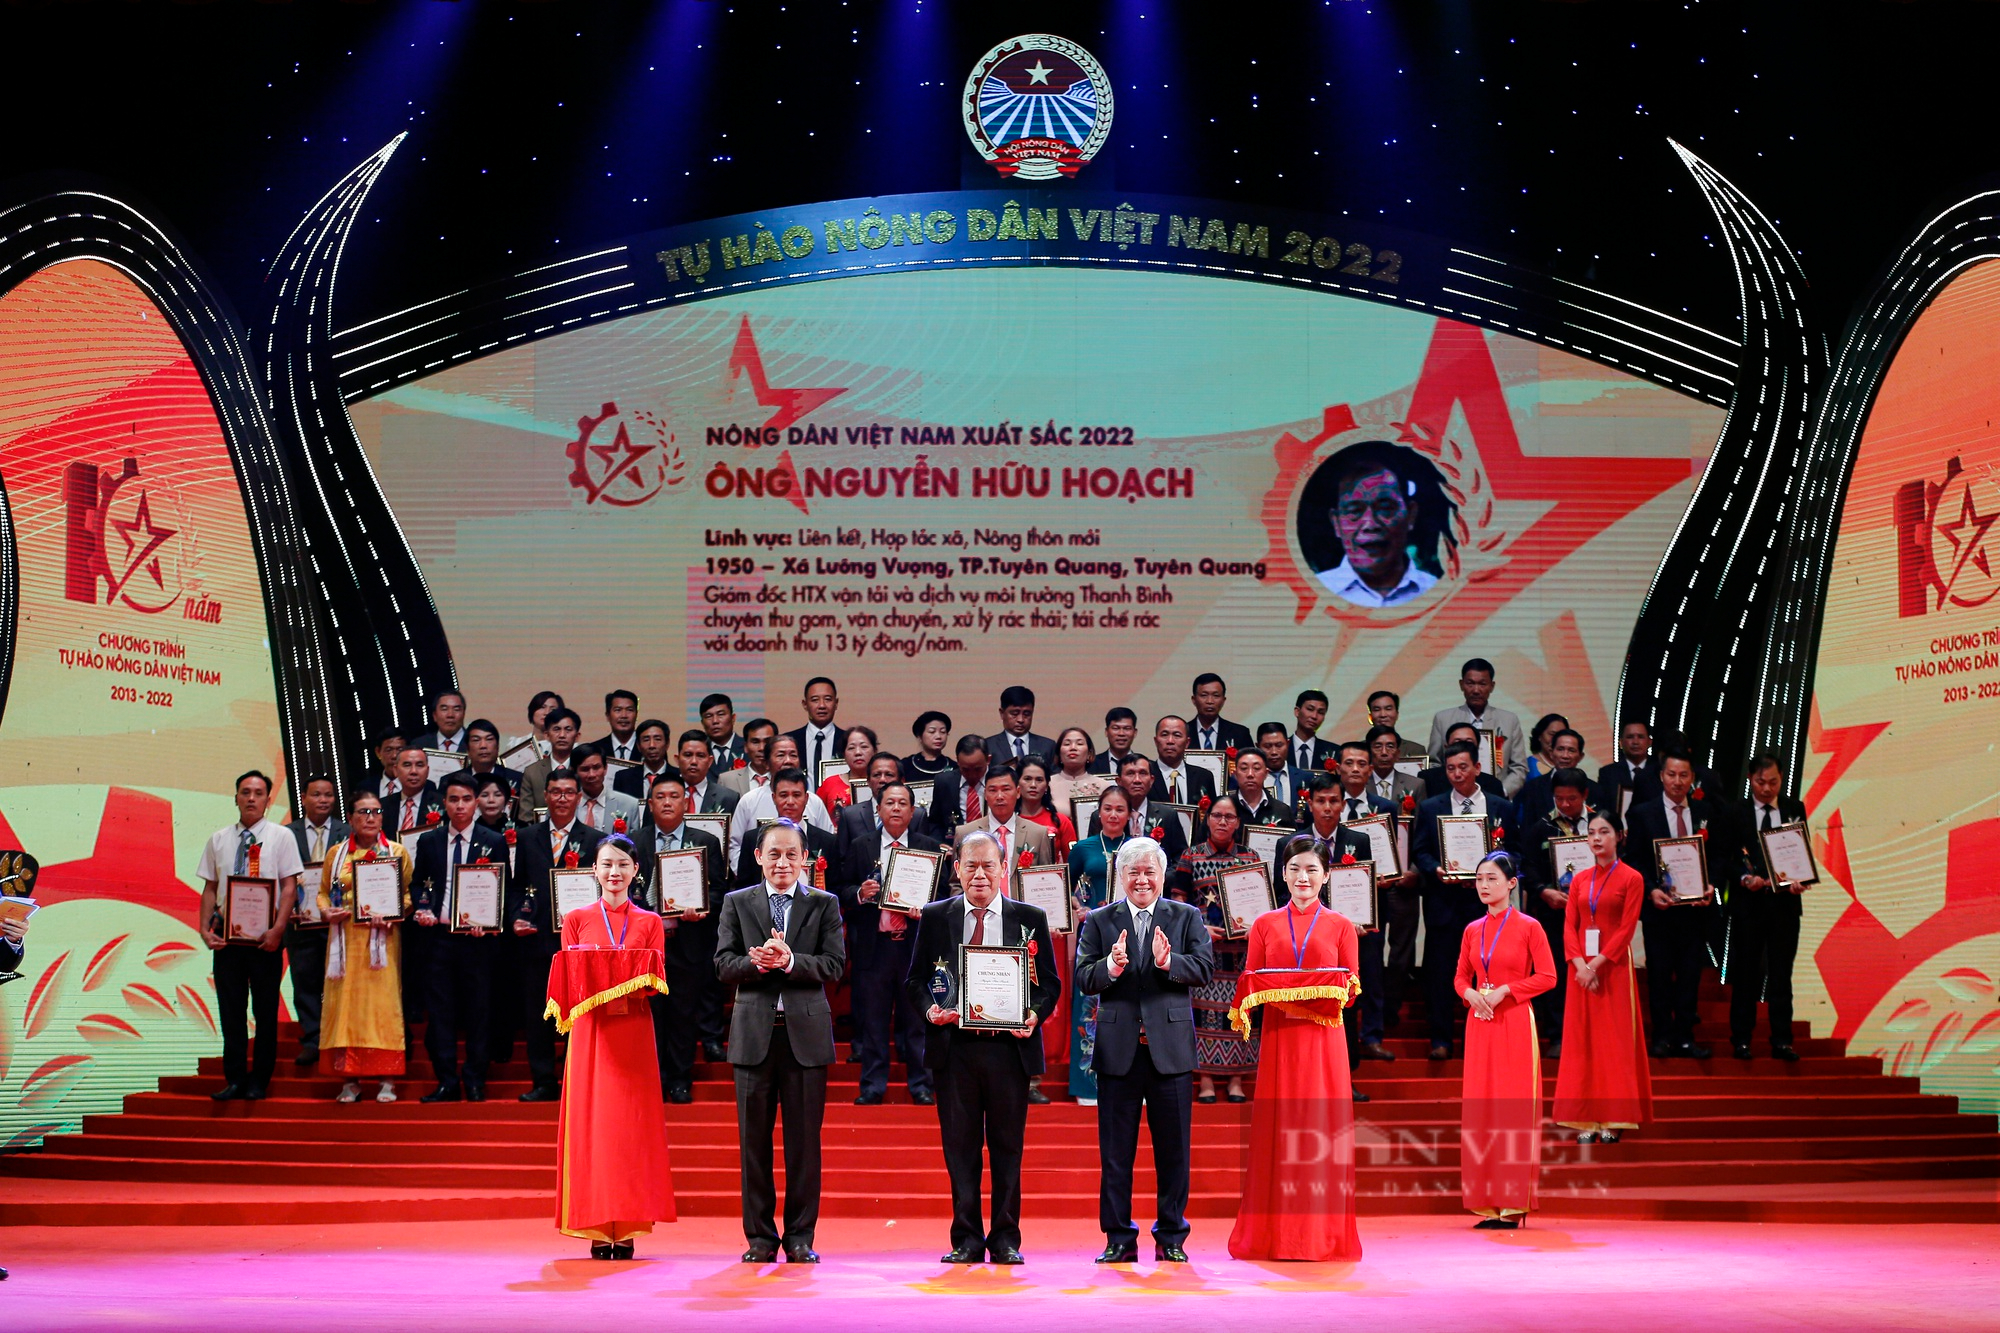 Ảnh toàn cảnh Lễ tôn vinh và trao danh hiệu cho 100 Nông dân Việt Nam xuất sắc 2022 - Ảnh 9.